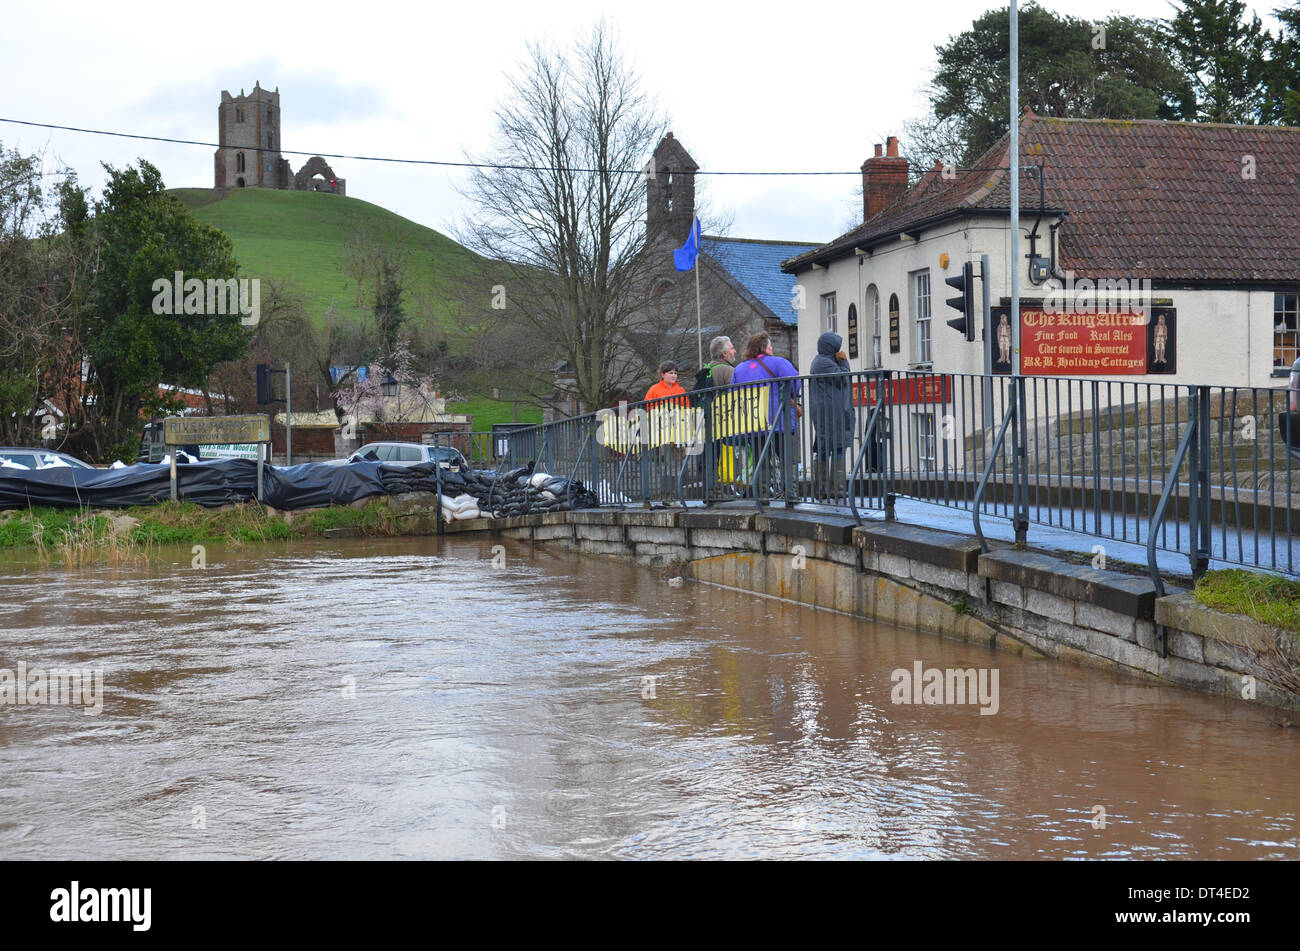 Pont de terrier, Somerset, Royaume-Uni. 8 février 2014. Inondations au Royaume-Uni s'enfouir dans le Somerset Bridge/AlamyLiveNews,Robert Timoney. Banque D'Images